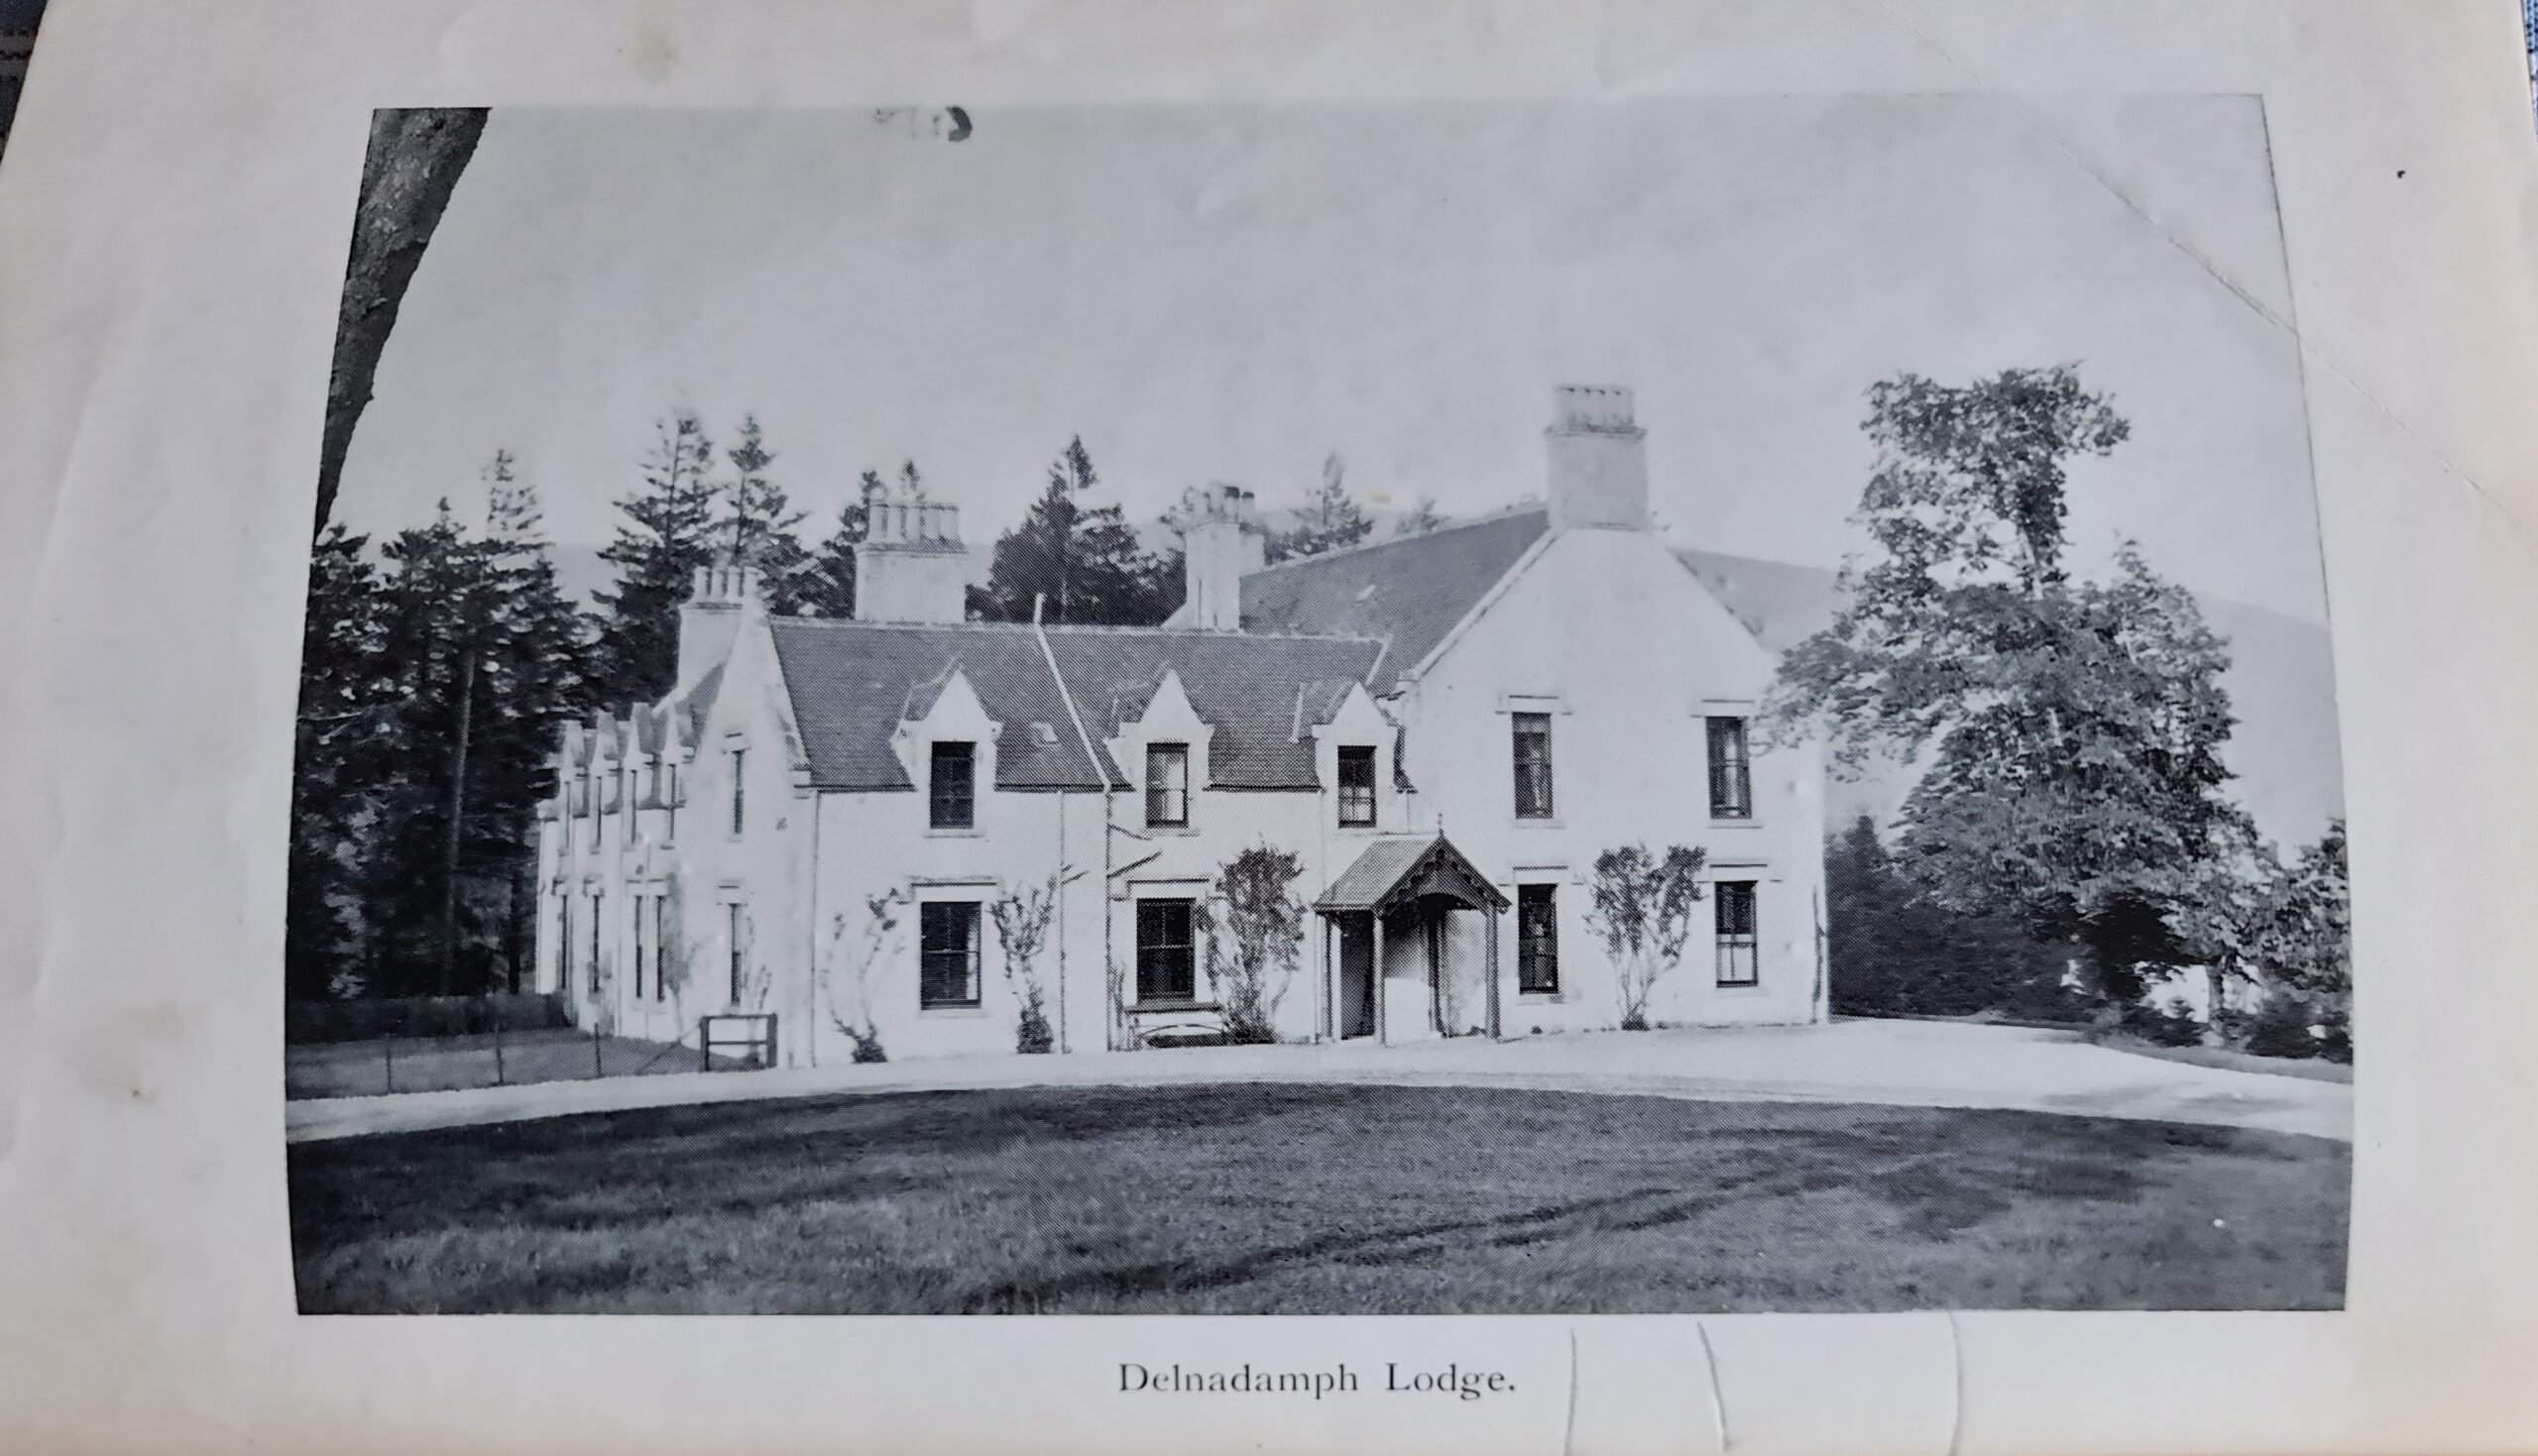 Delnadamph Lodge